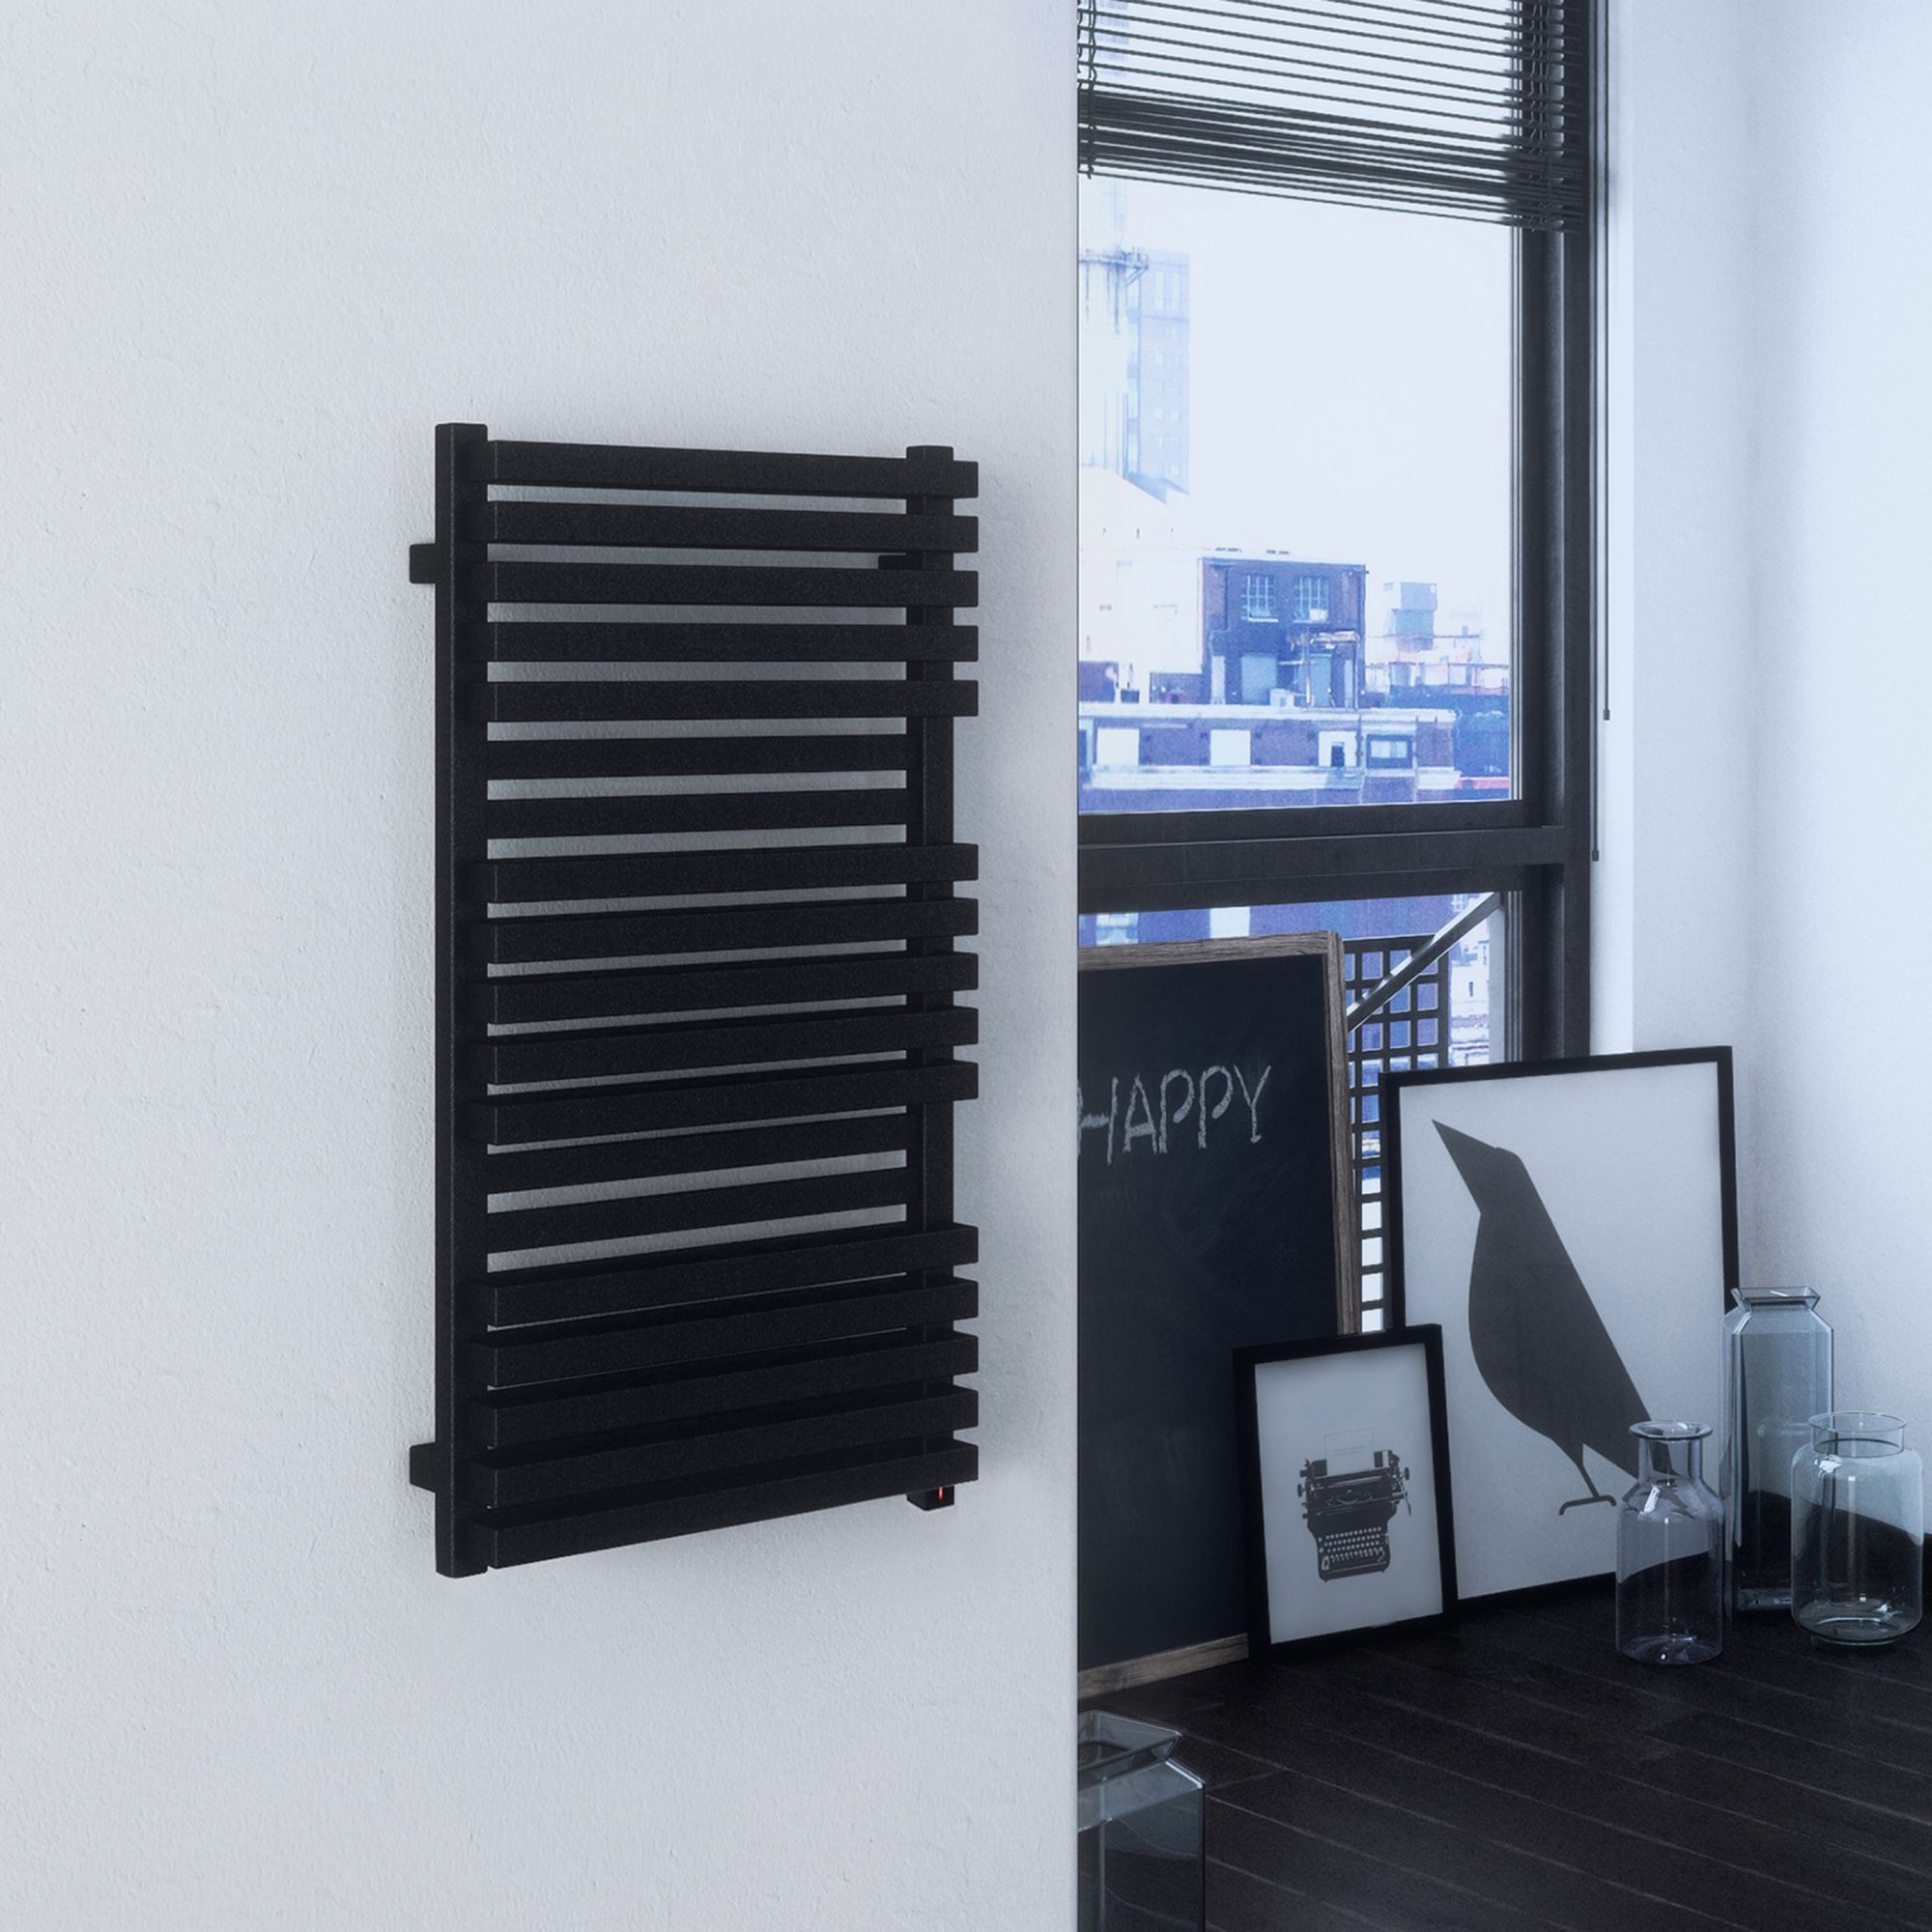 Terma Quadrus Electric Metallic black Towel warmer (W)450mm x (H)870mm